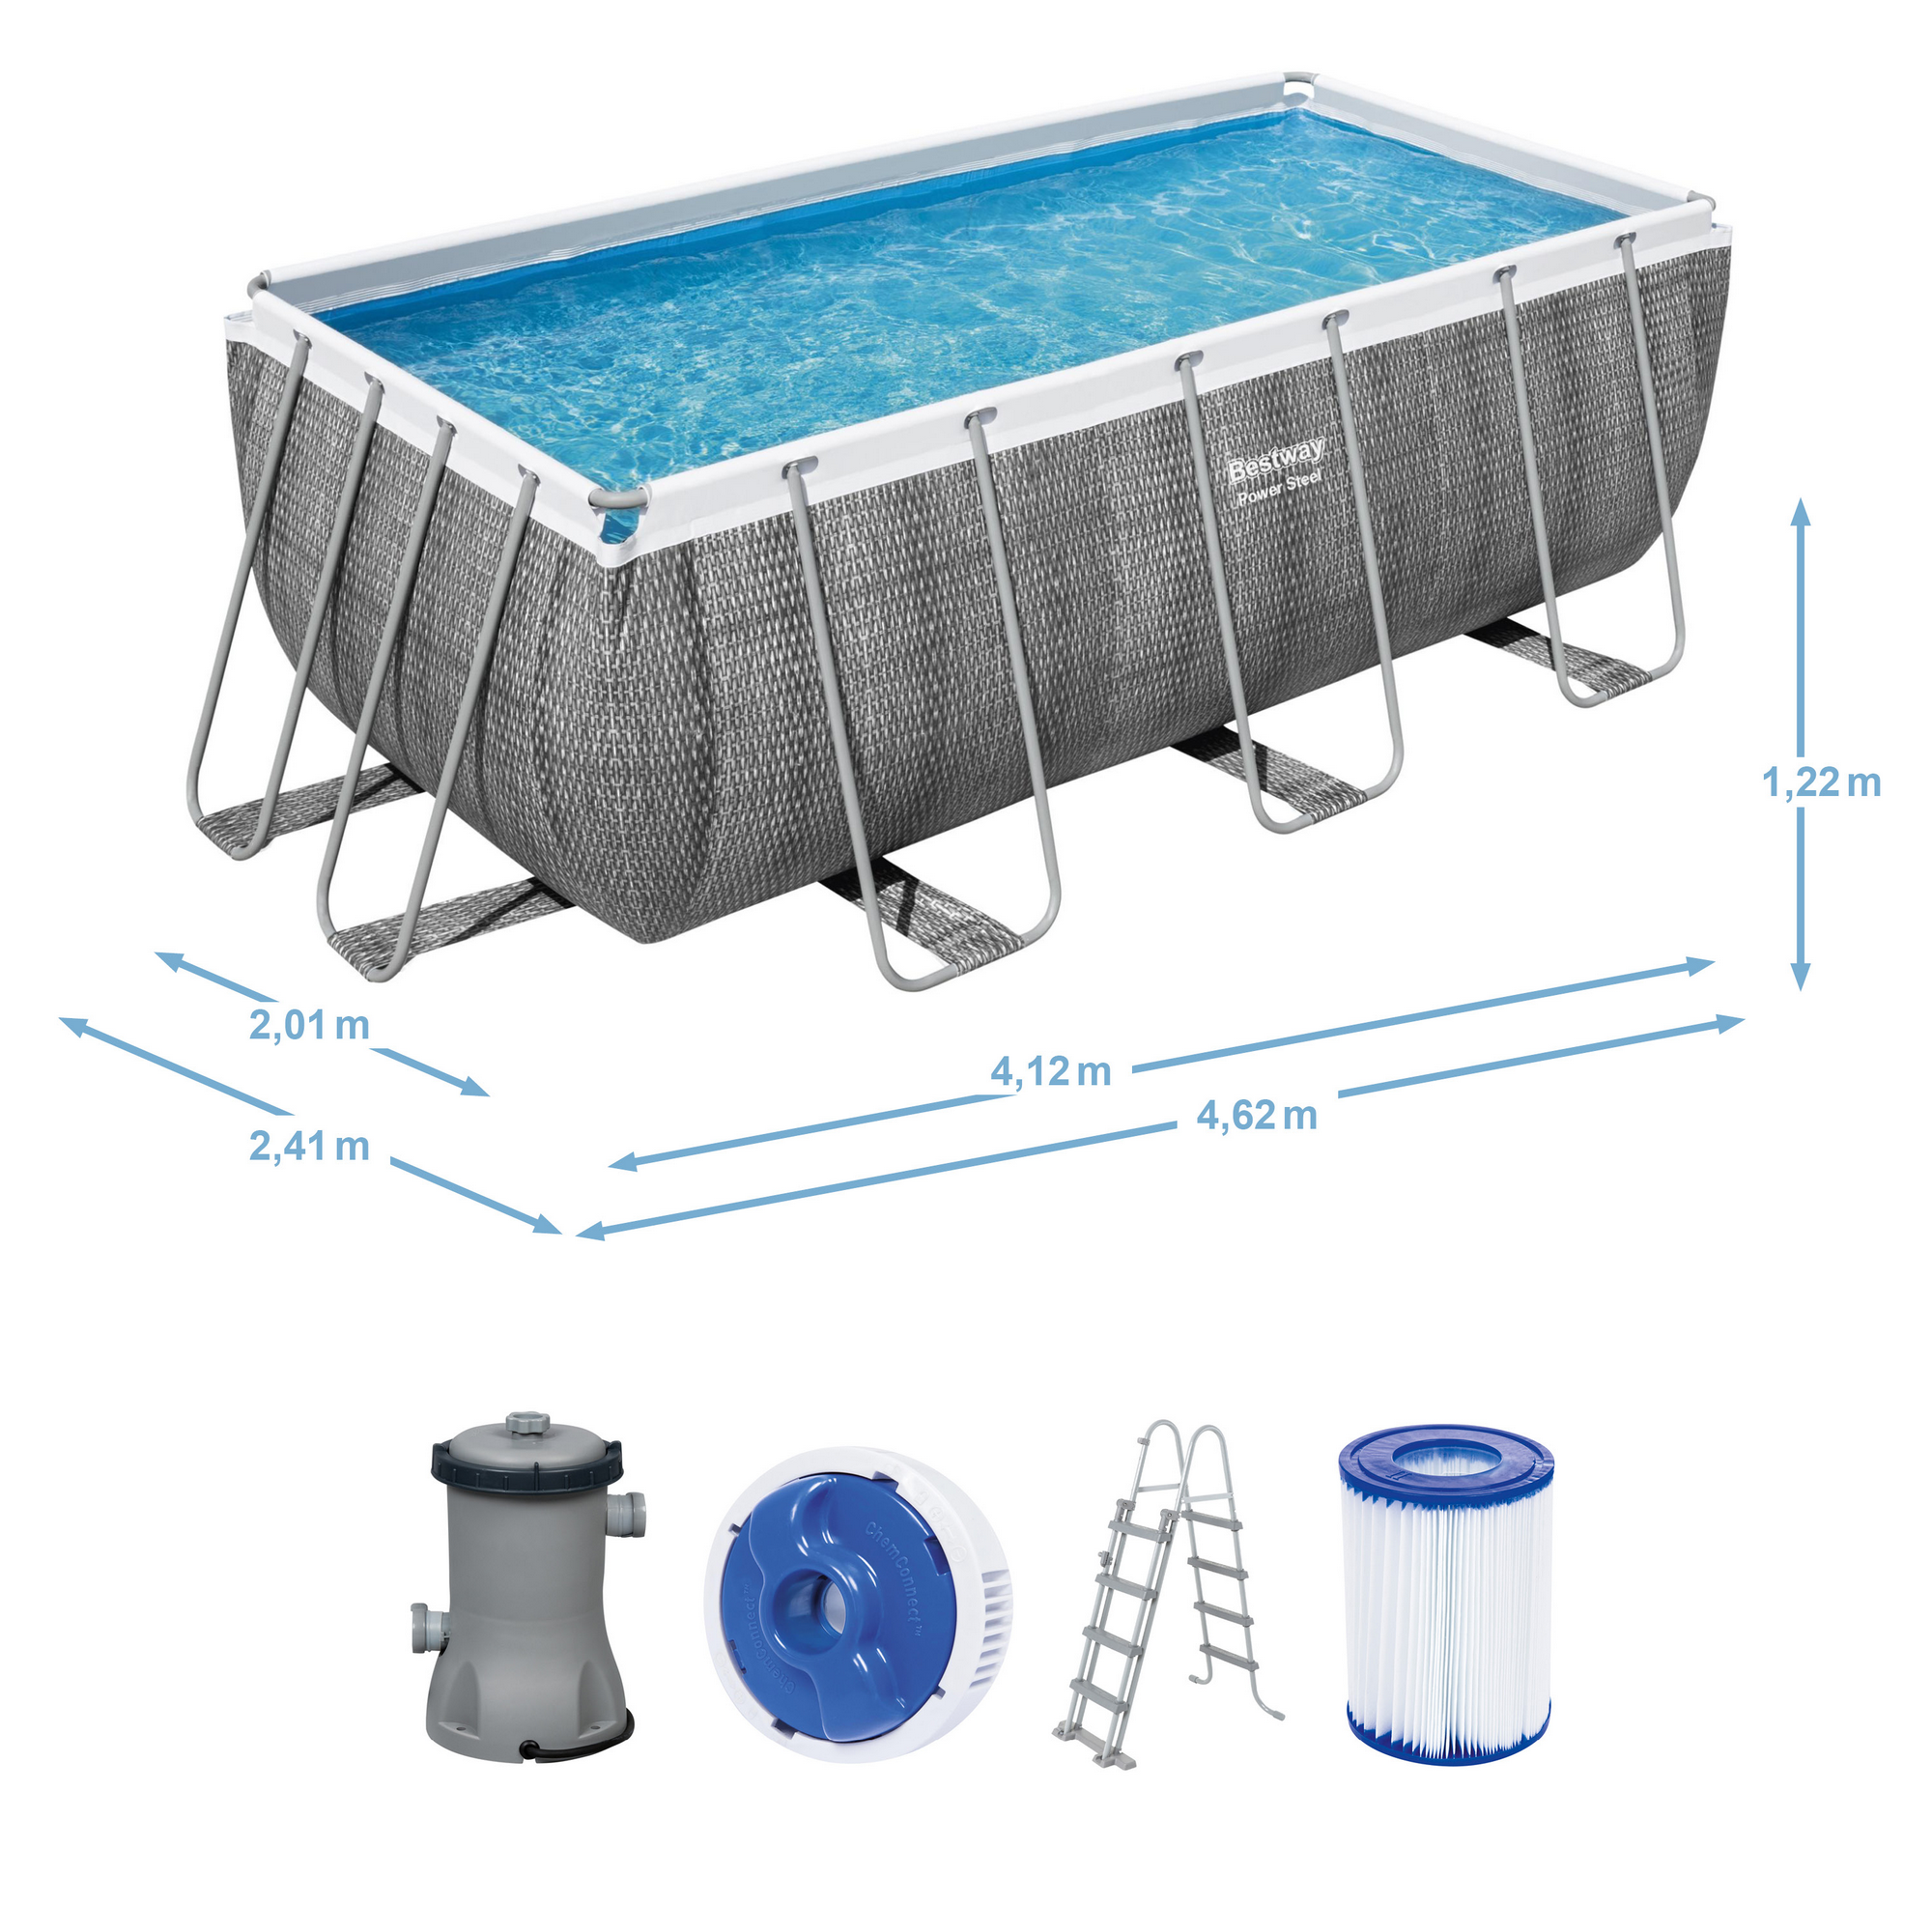 Frame-Pool-Set 'Power Steel' 412 x 201 x 122 cm mit Sicherheitsleiter und Kartuschenfilter + product picture